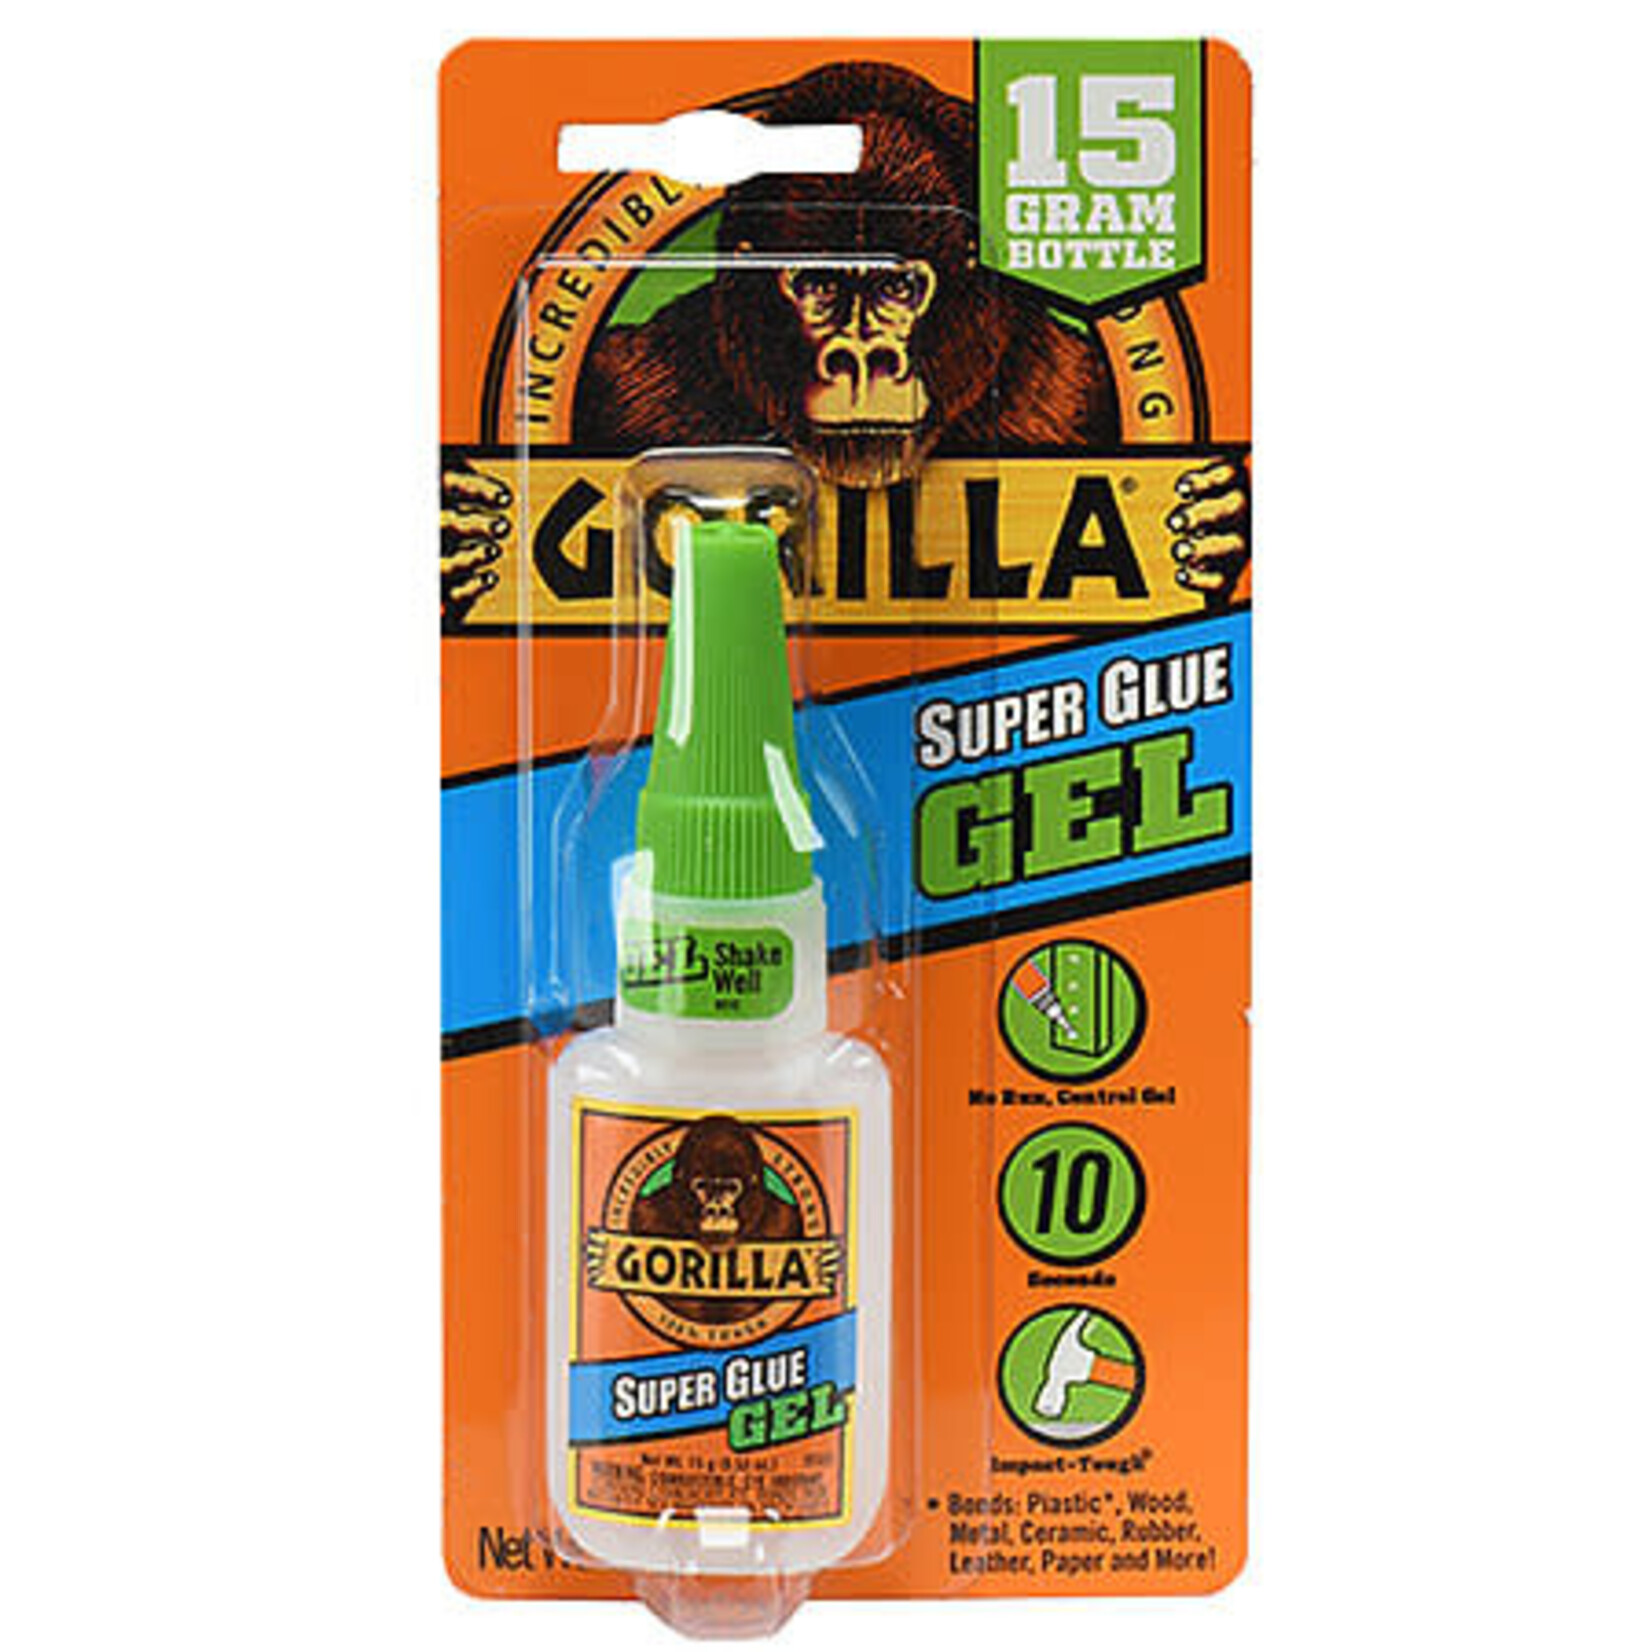 Gorilla Glue Gorilla Super Glue Gel, 15G Bottle